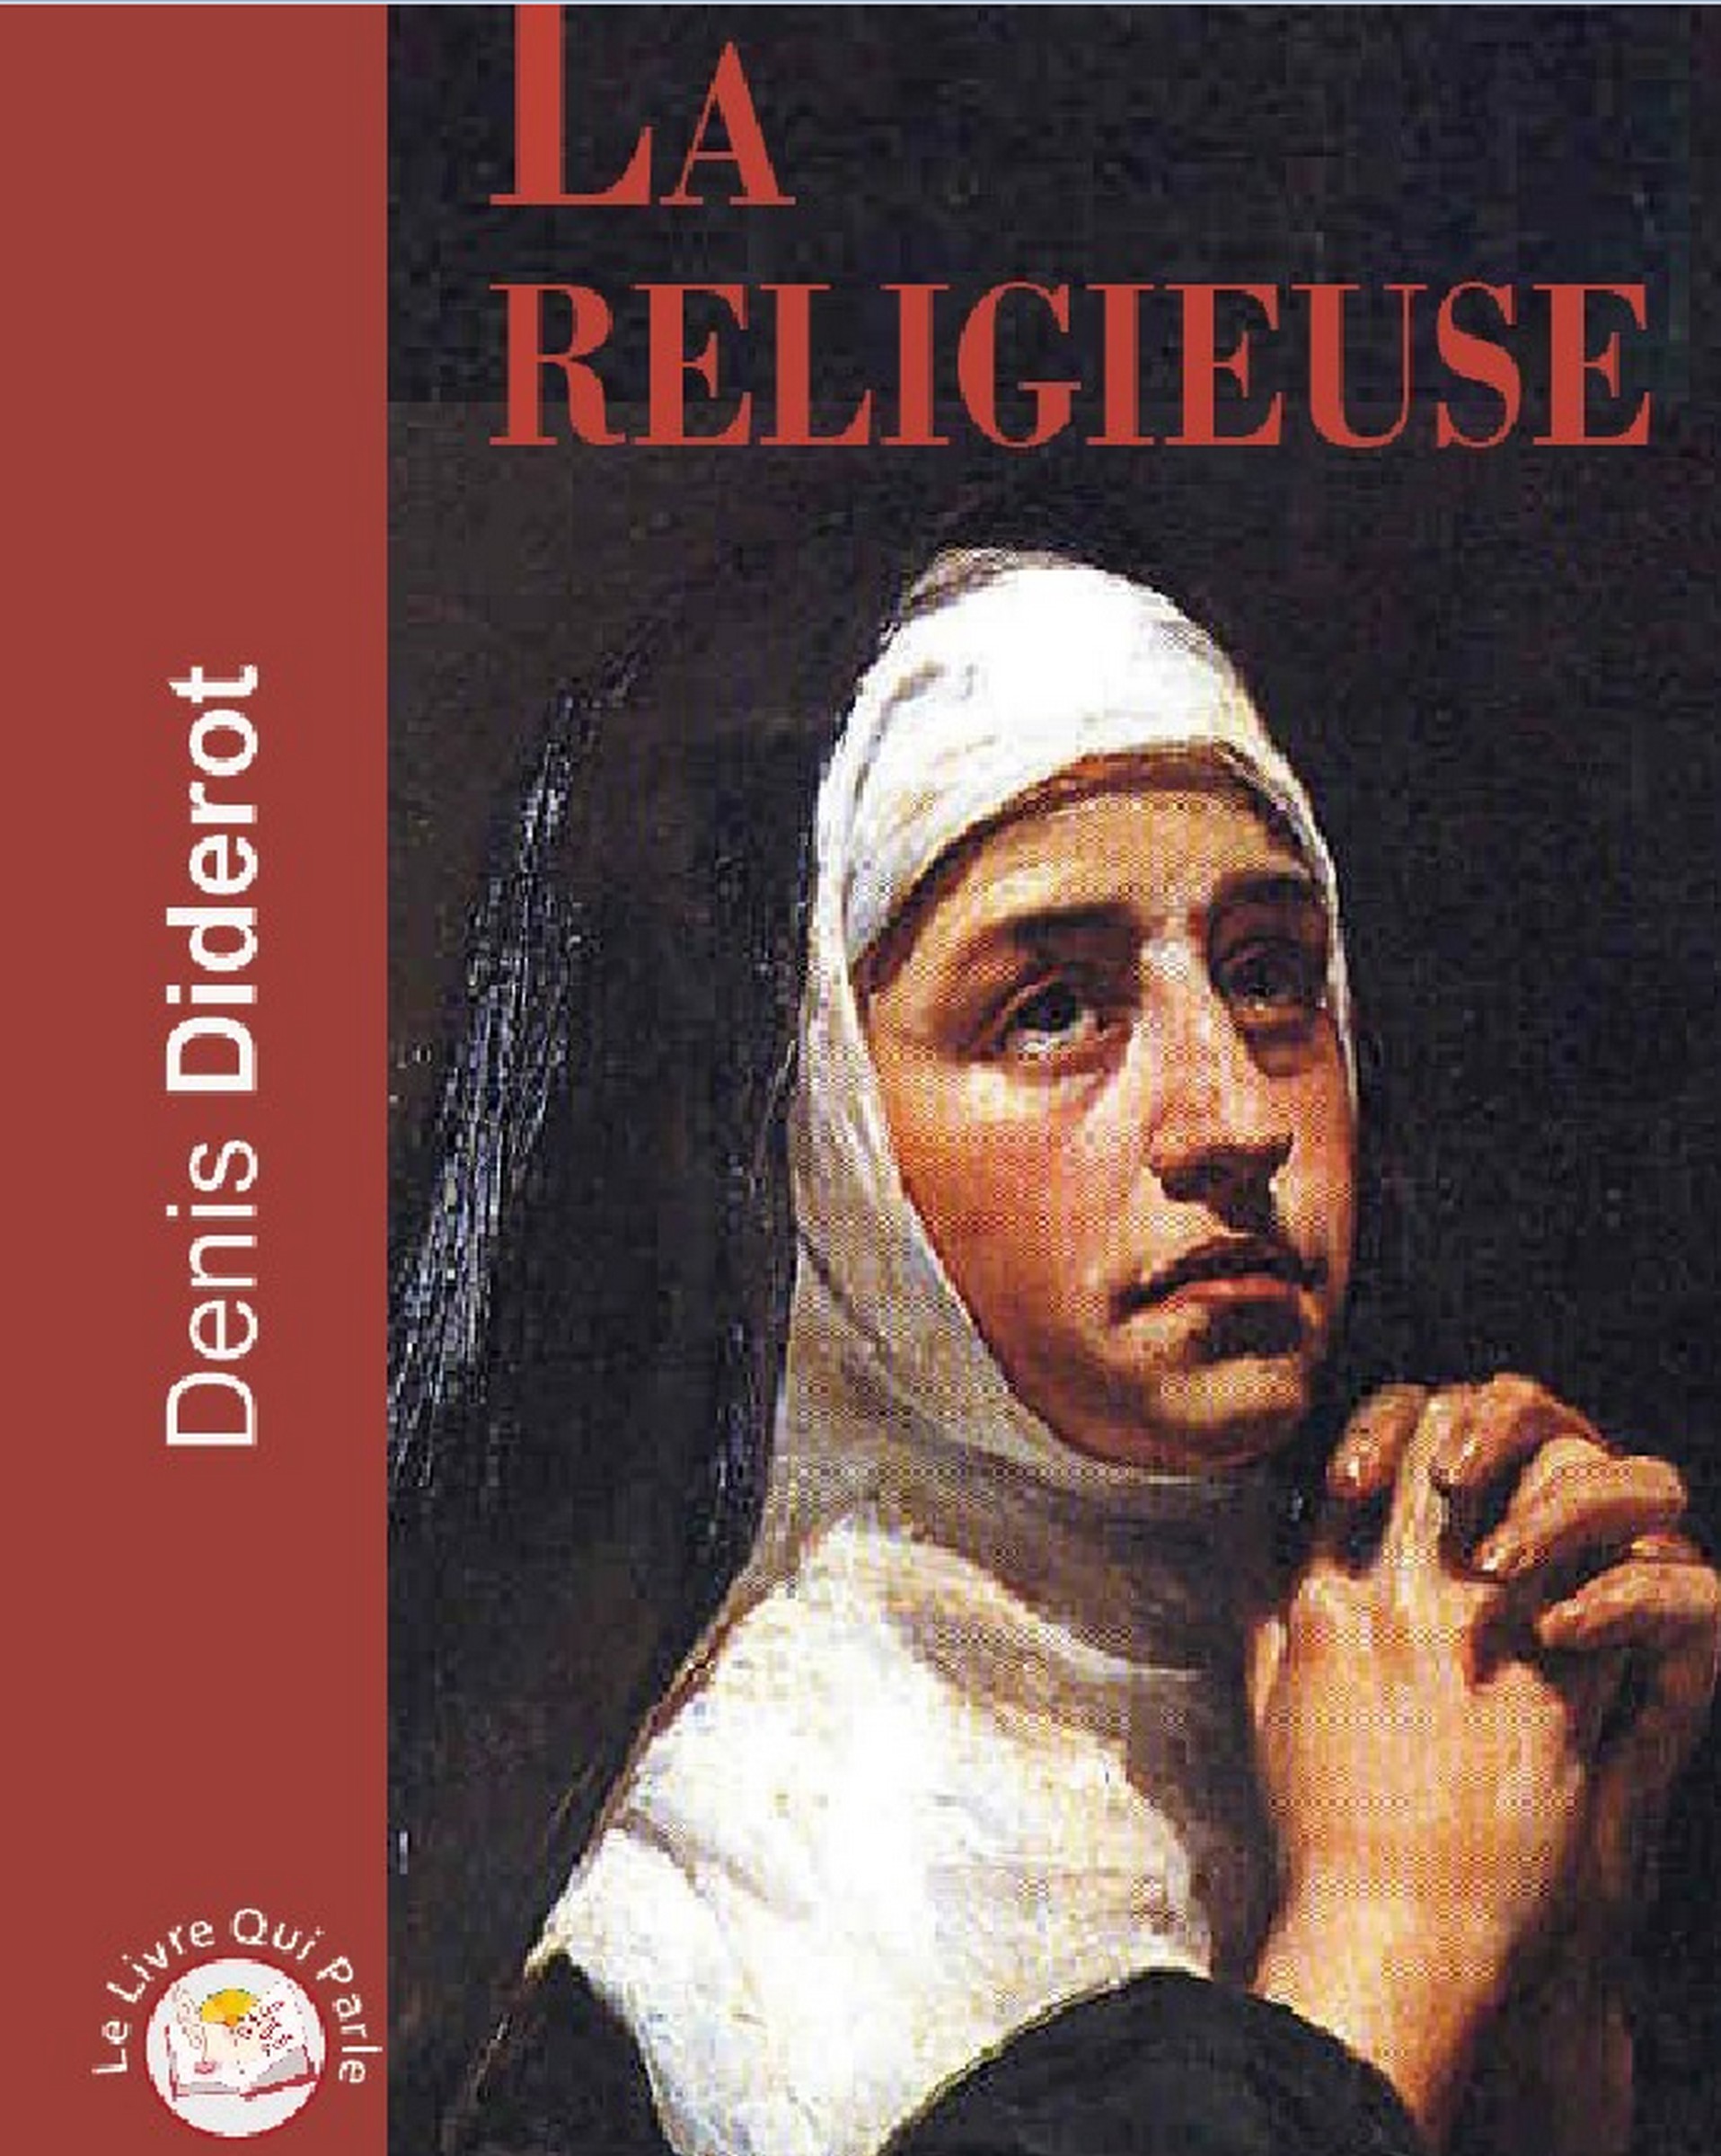 Couverture du livre audio La religieuse De Denis Diderot 